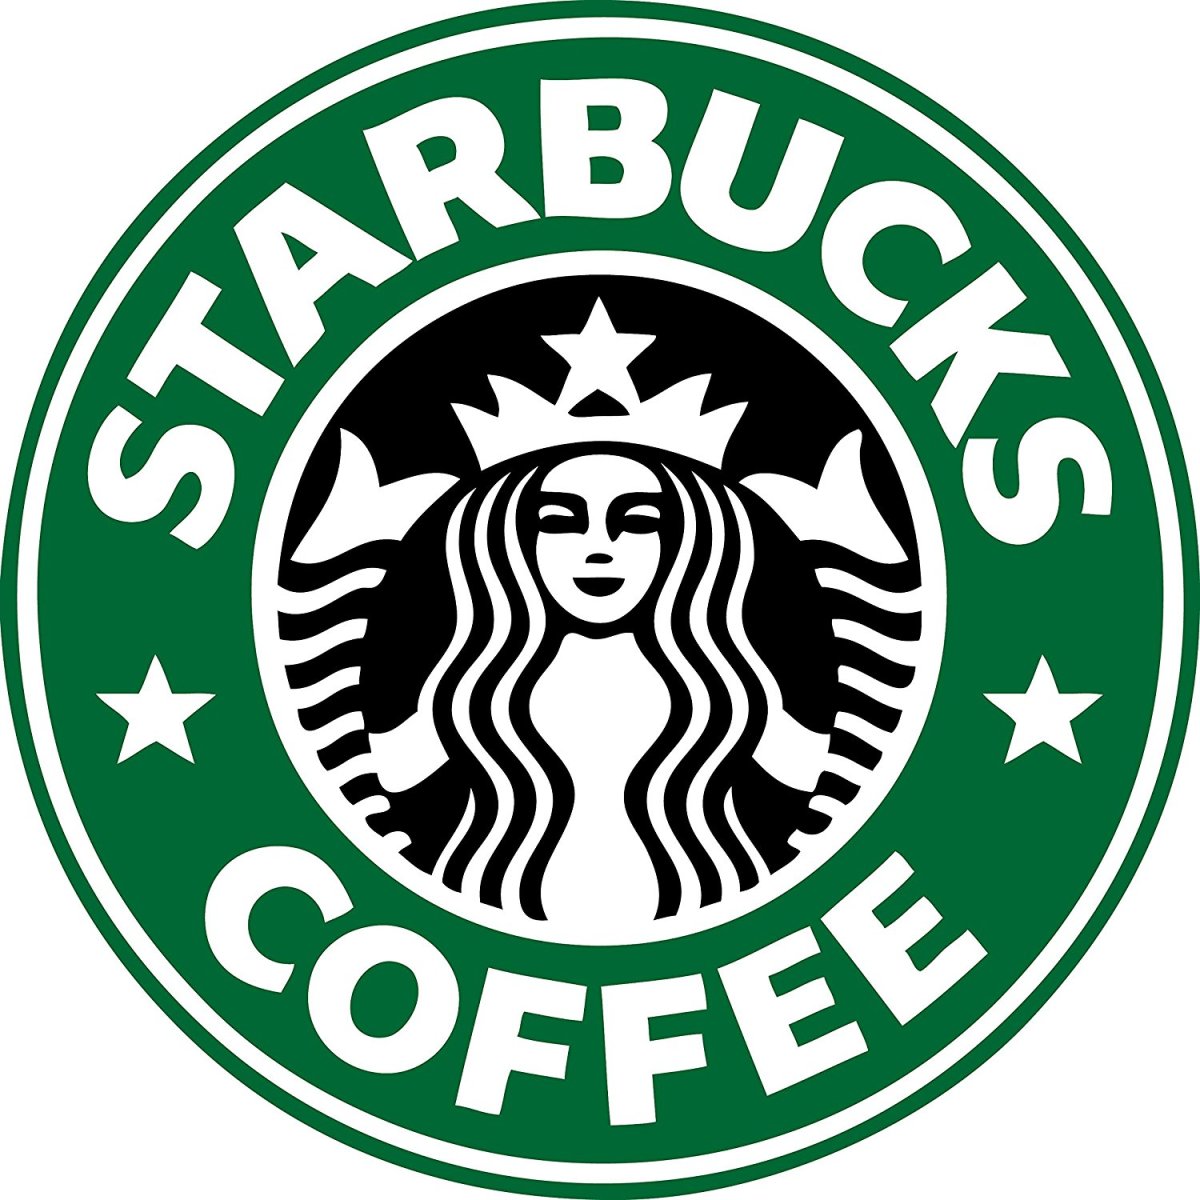 Starbucks logo